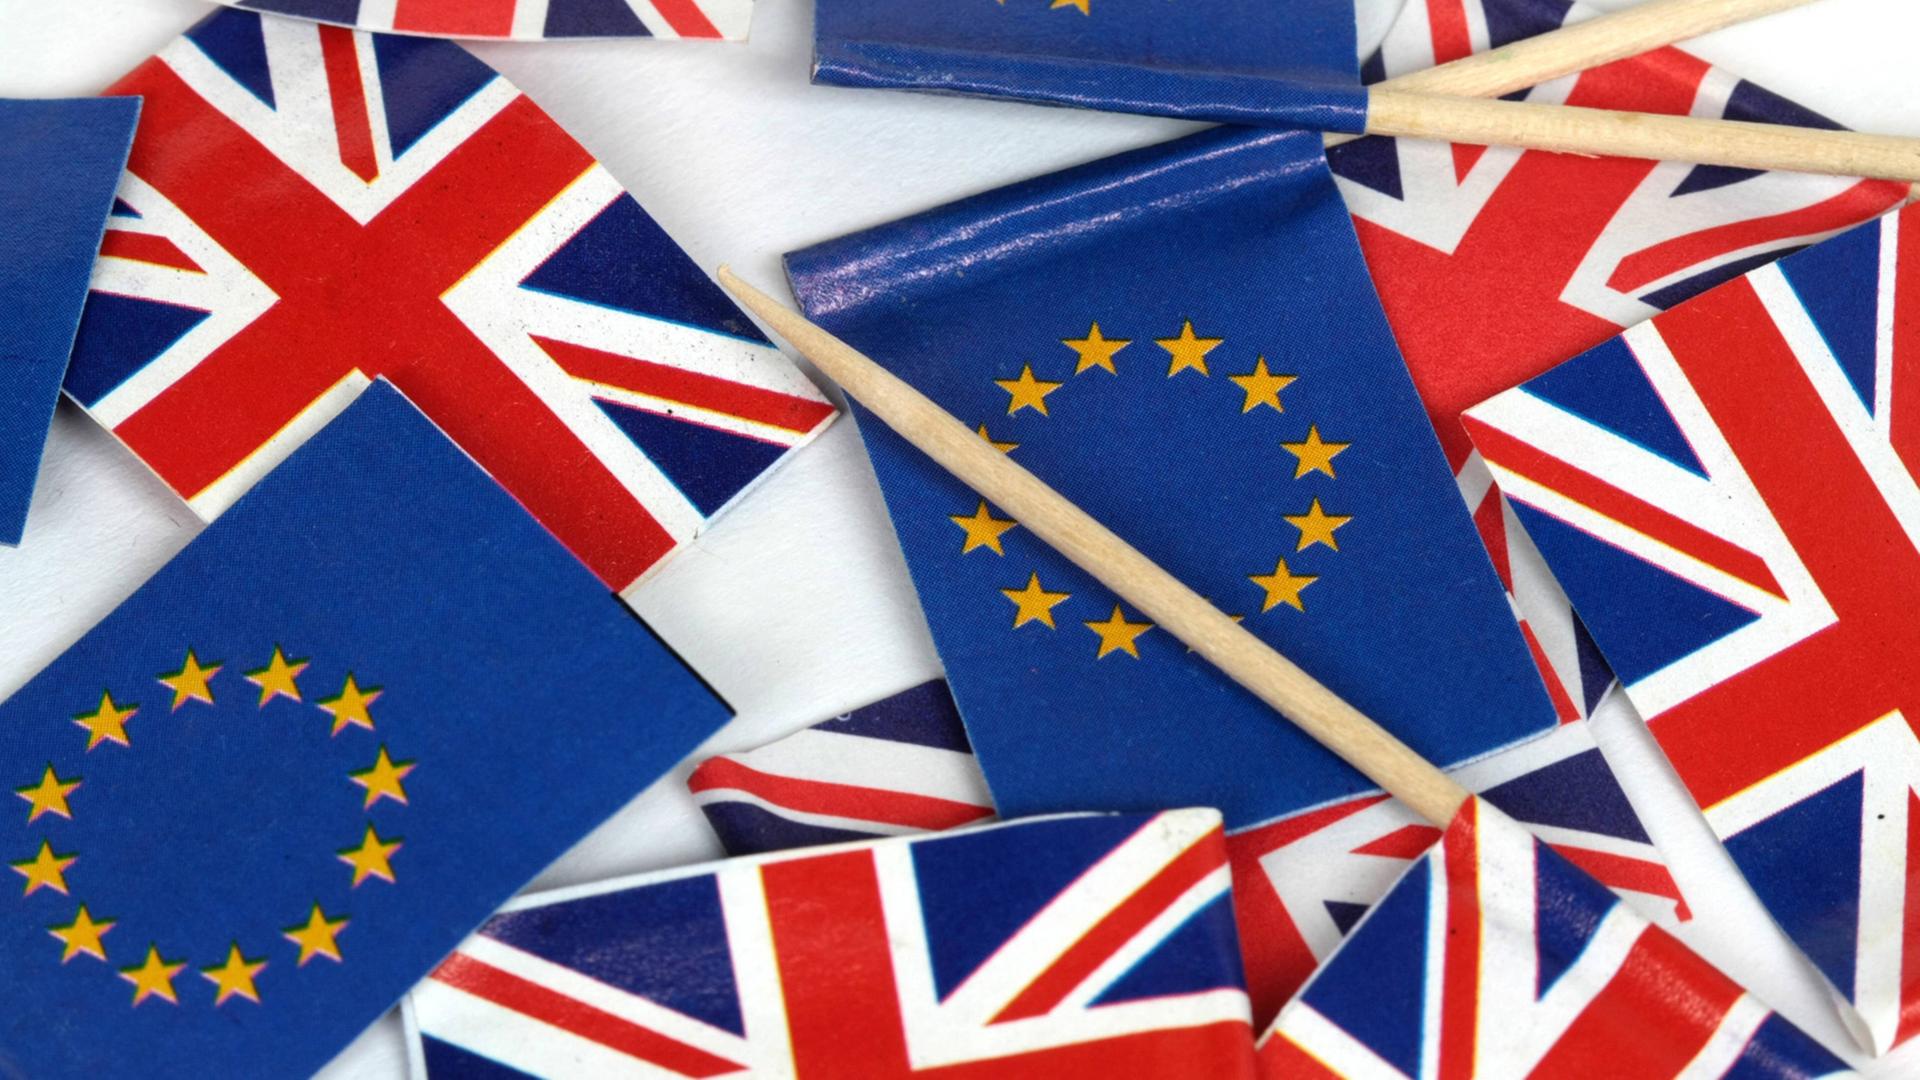 Flaggen der Europäischen Union und von Großbritannien